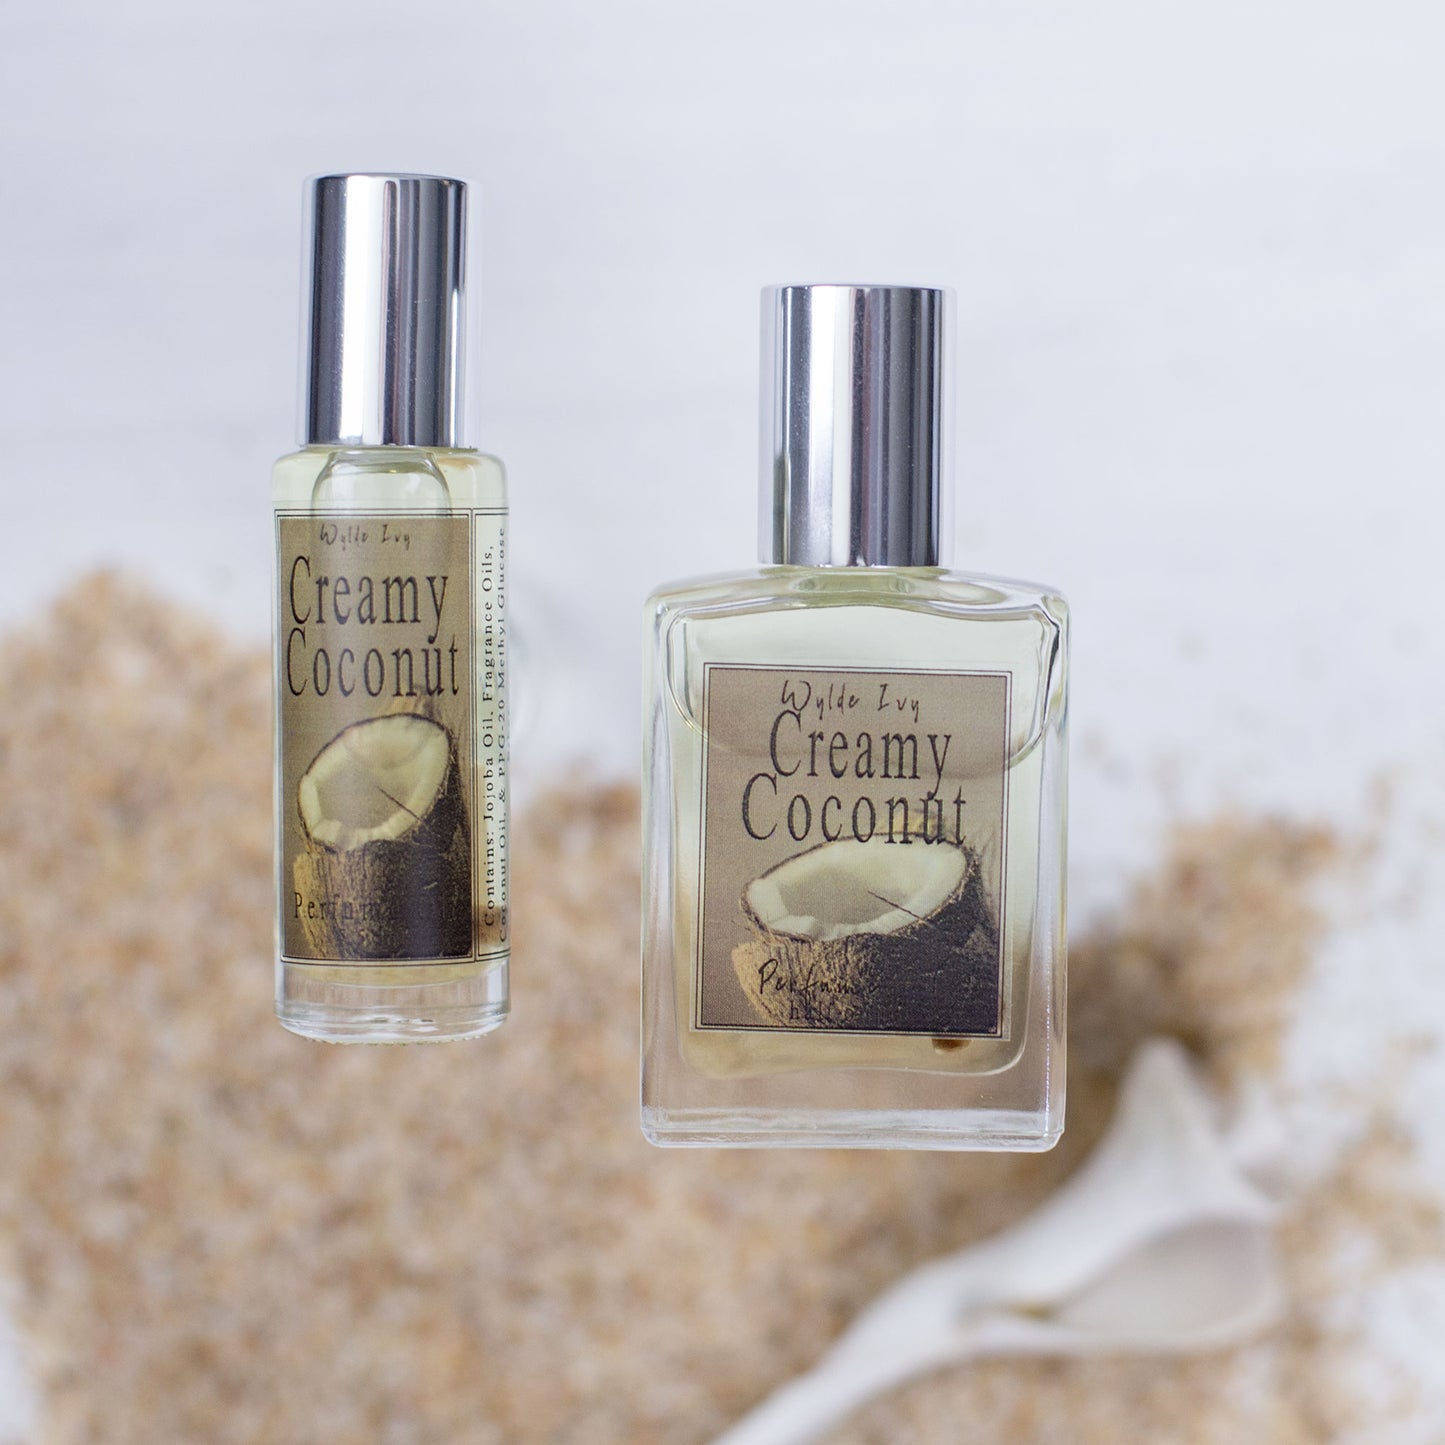 Beach Babe Perfume Oils